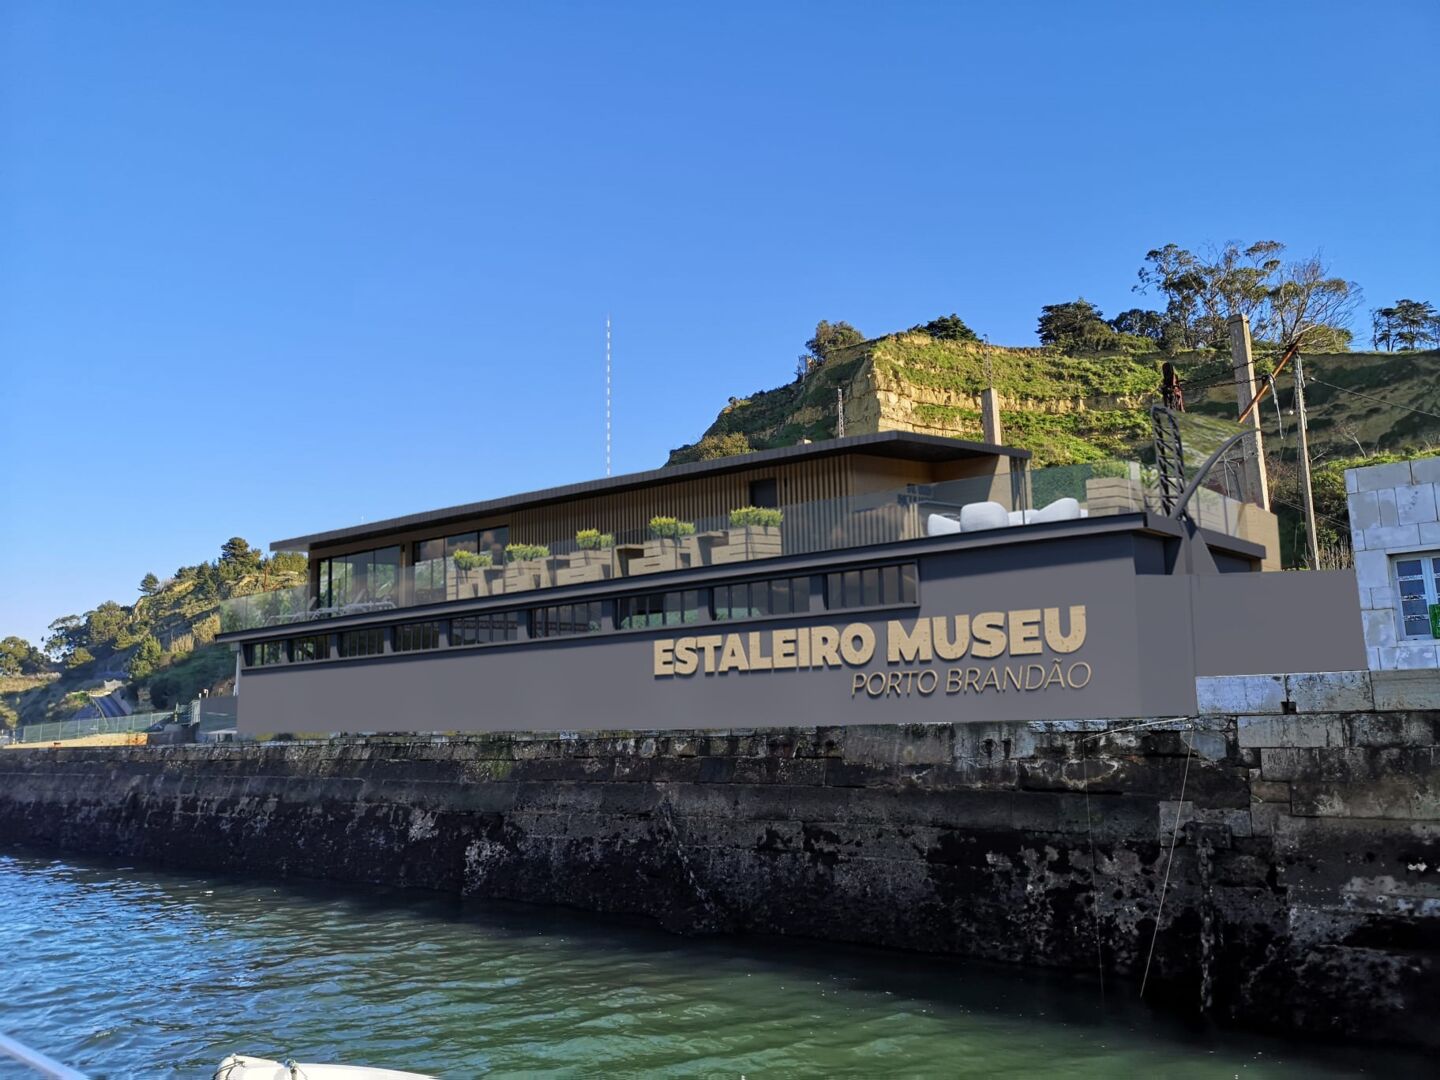 Tegning av et nytt museumsbygg beliggende helt nede ved havet i et gammelt skipsverft. Blå himmel og grønne klipper.